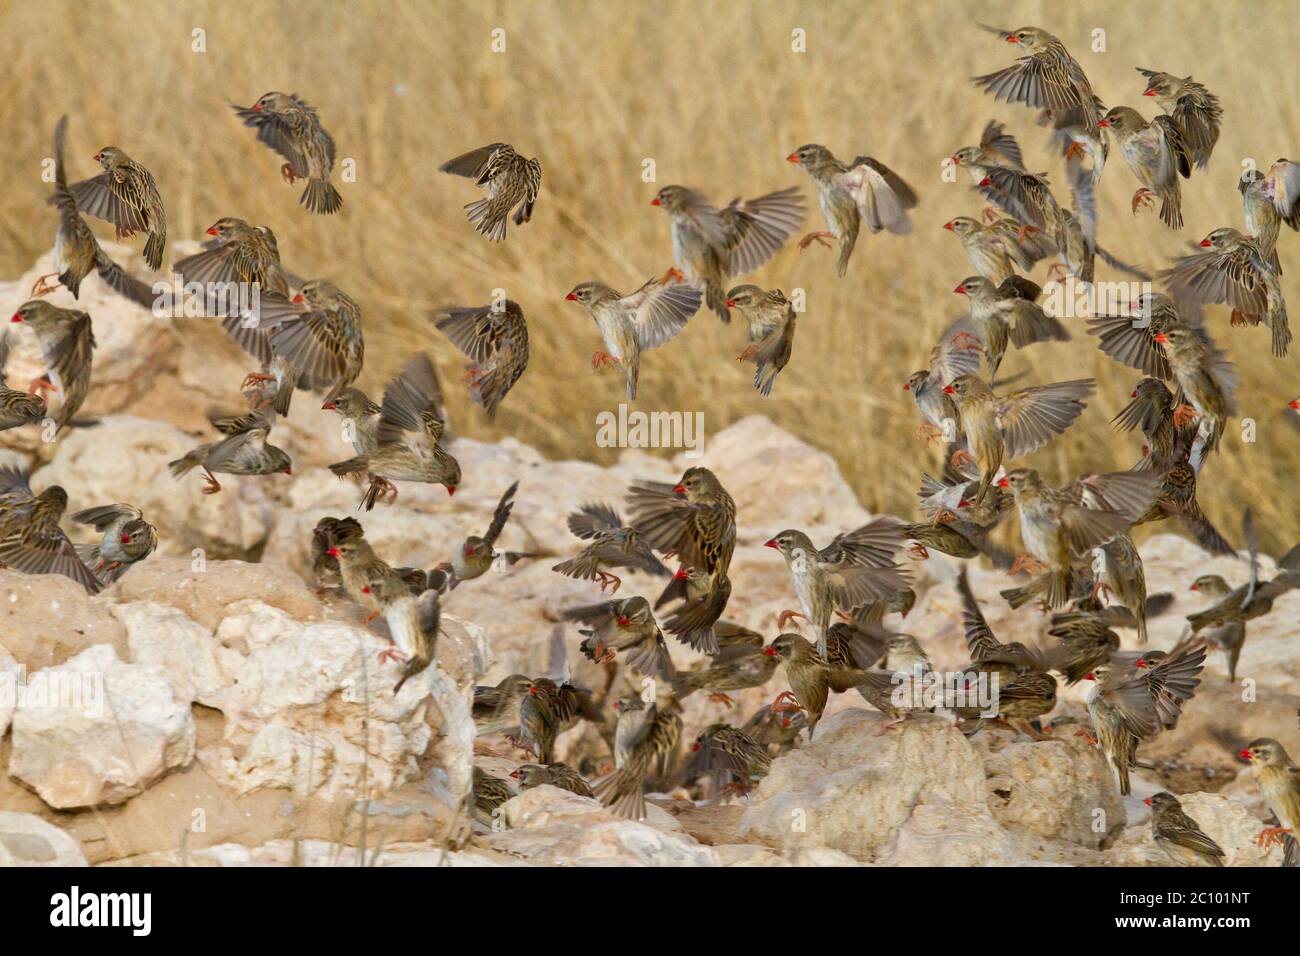 swarm of quela small birds Stock Photo